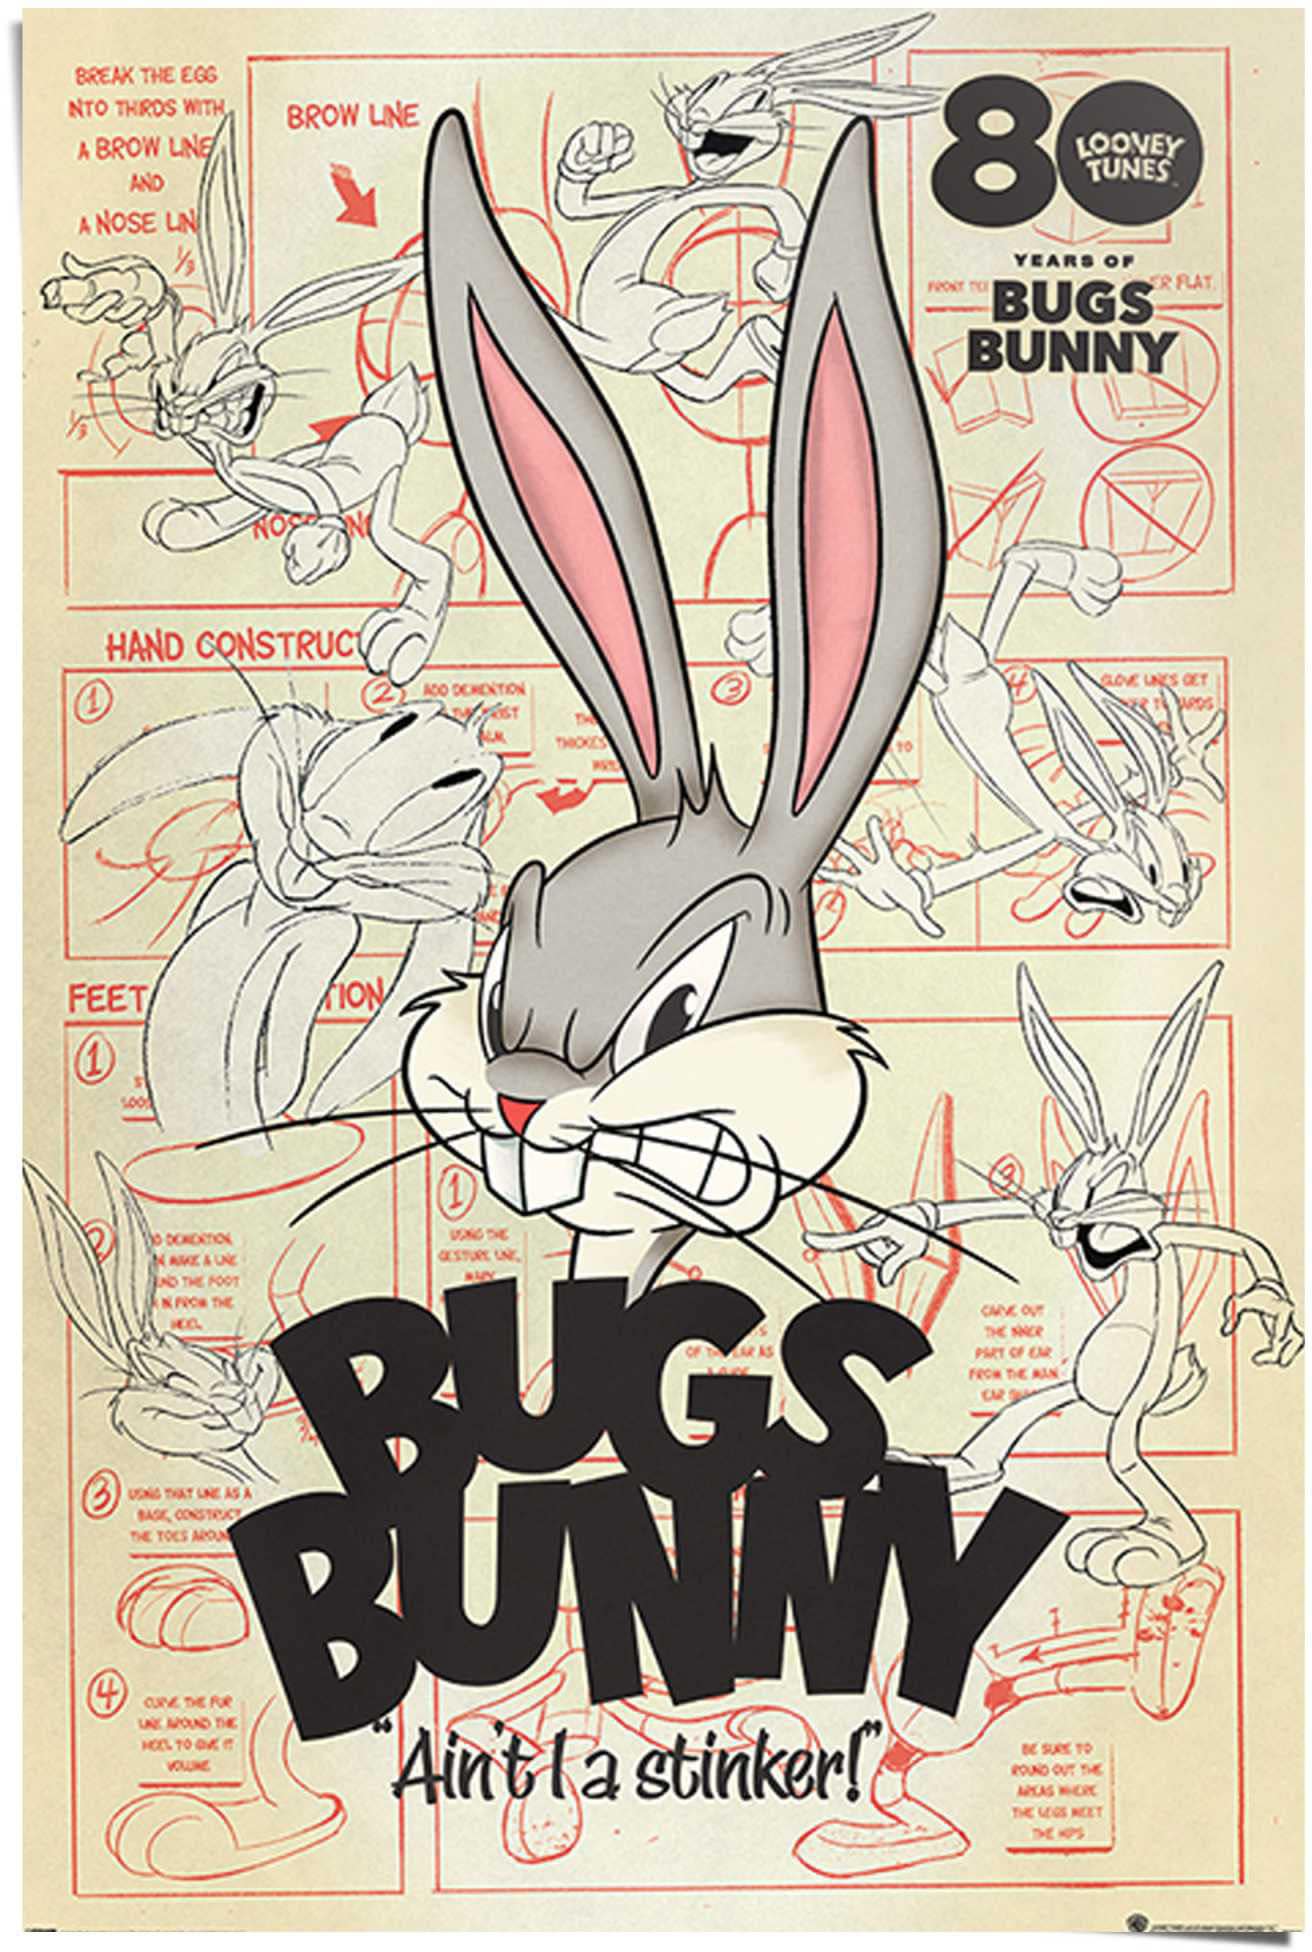 ♕ I - Warner Bunny a (1 ait versandkostenfrei stinker St.) auf Bros Tunes Reinders! Poster - Hase«, »Bugs Looney